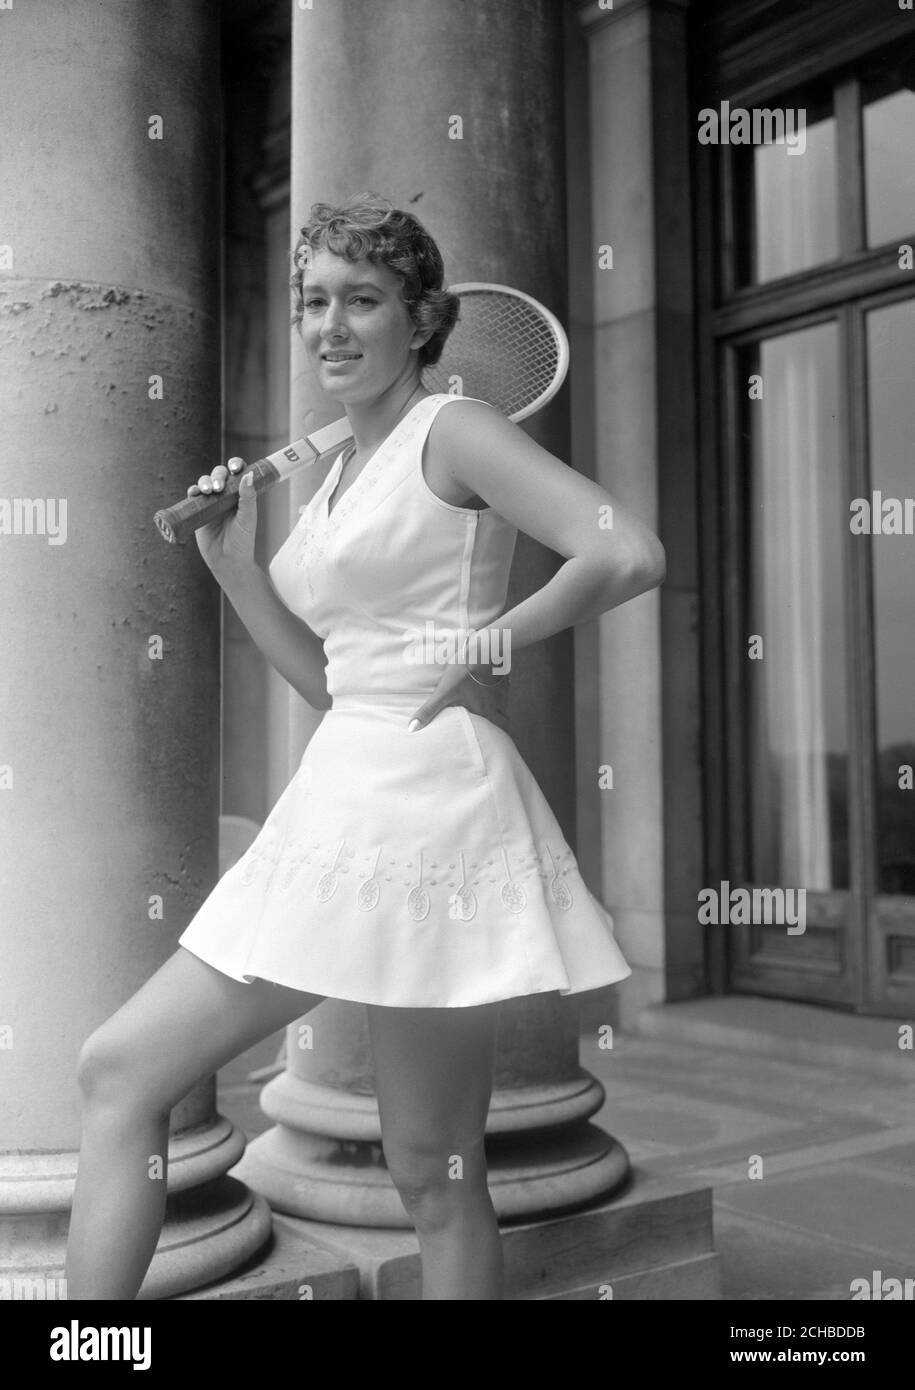 Schläger und Tennisbälle bilden das Stickmotiv des Kleides der amerikanischen Spielerin Sally Moore. Sie hat an der Pre-Wimbledon Tennis Party im Haus von Lady Crosfield in Highgate, London statt. Sally's Kittel zeigt in der Mitte jedes gestickten Schlägers ein Initial 'S' für Sally. Stockfoto